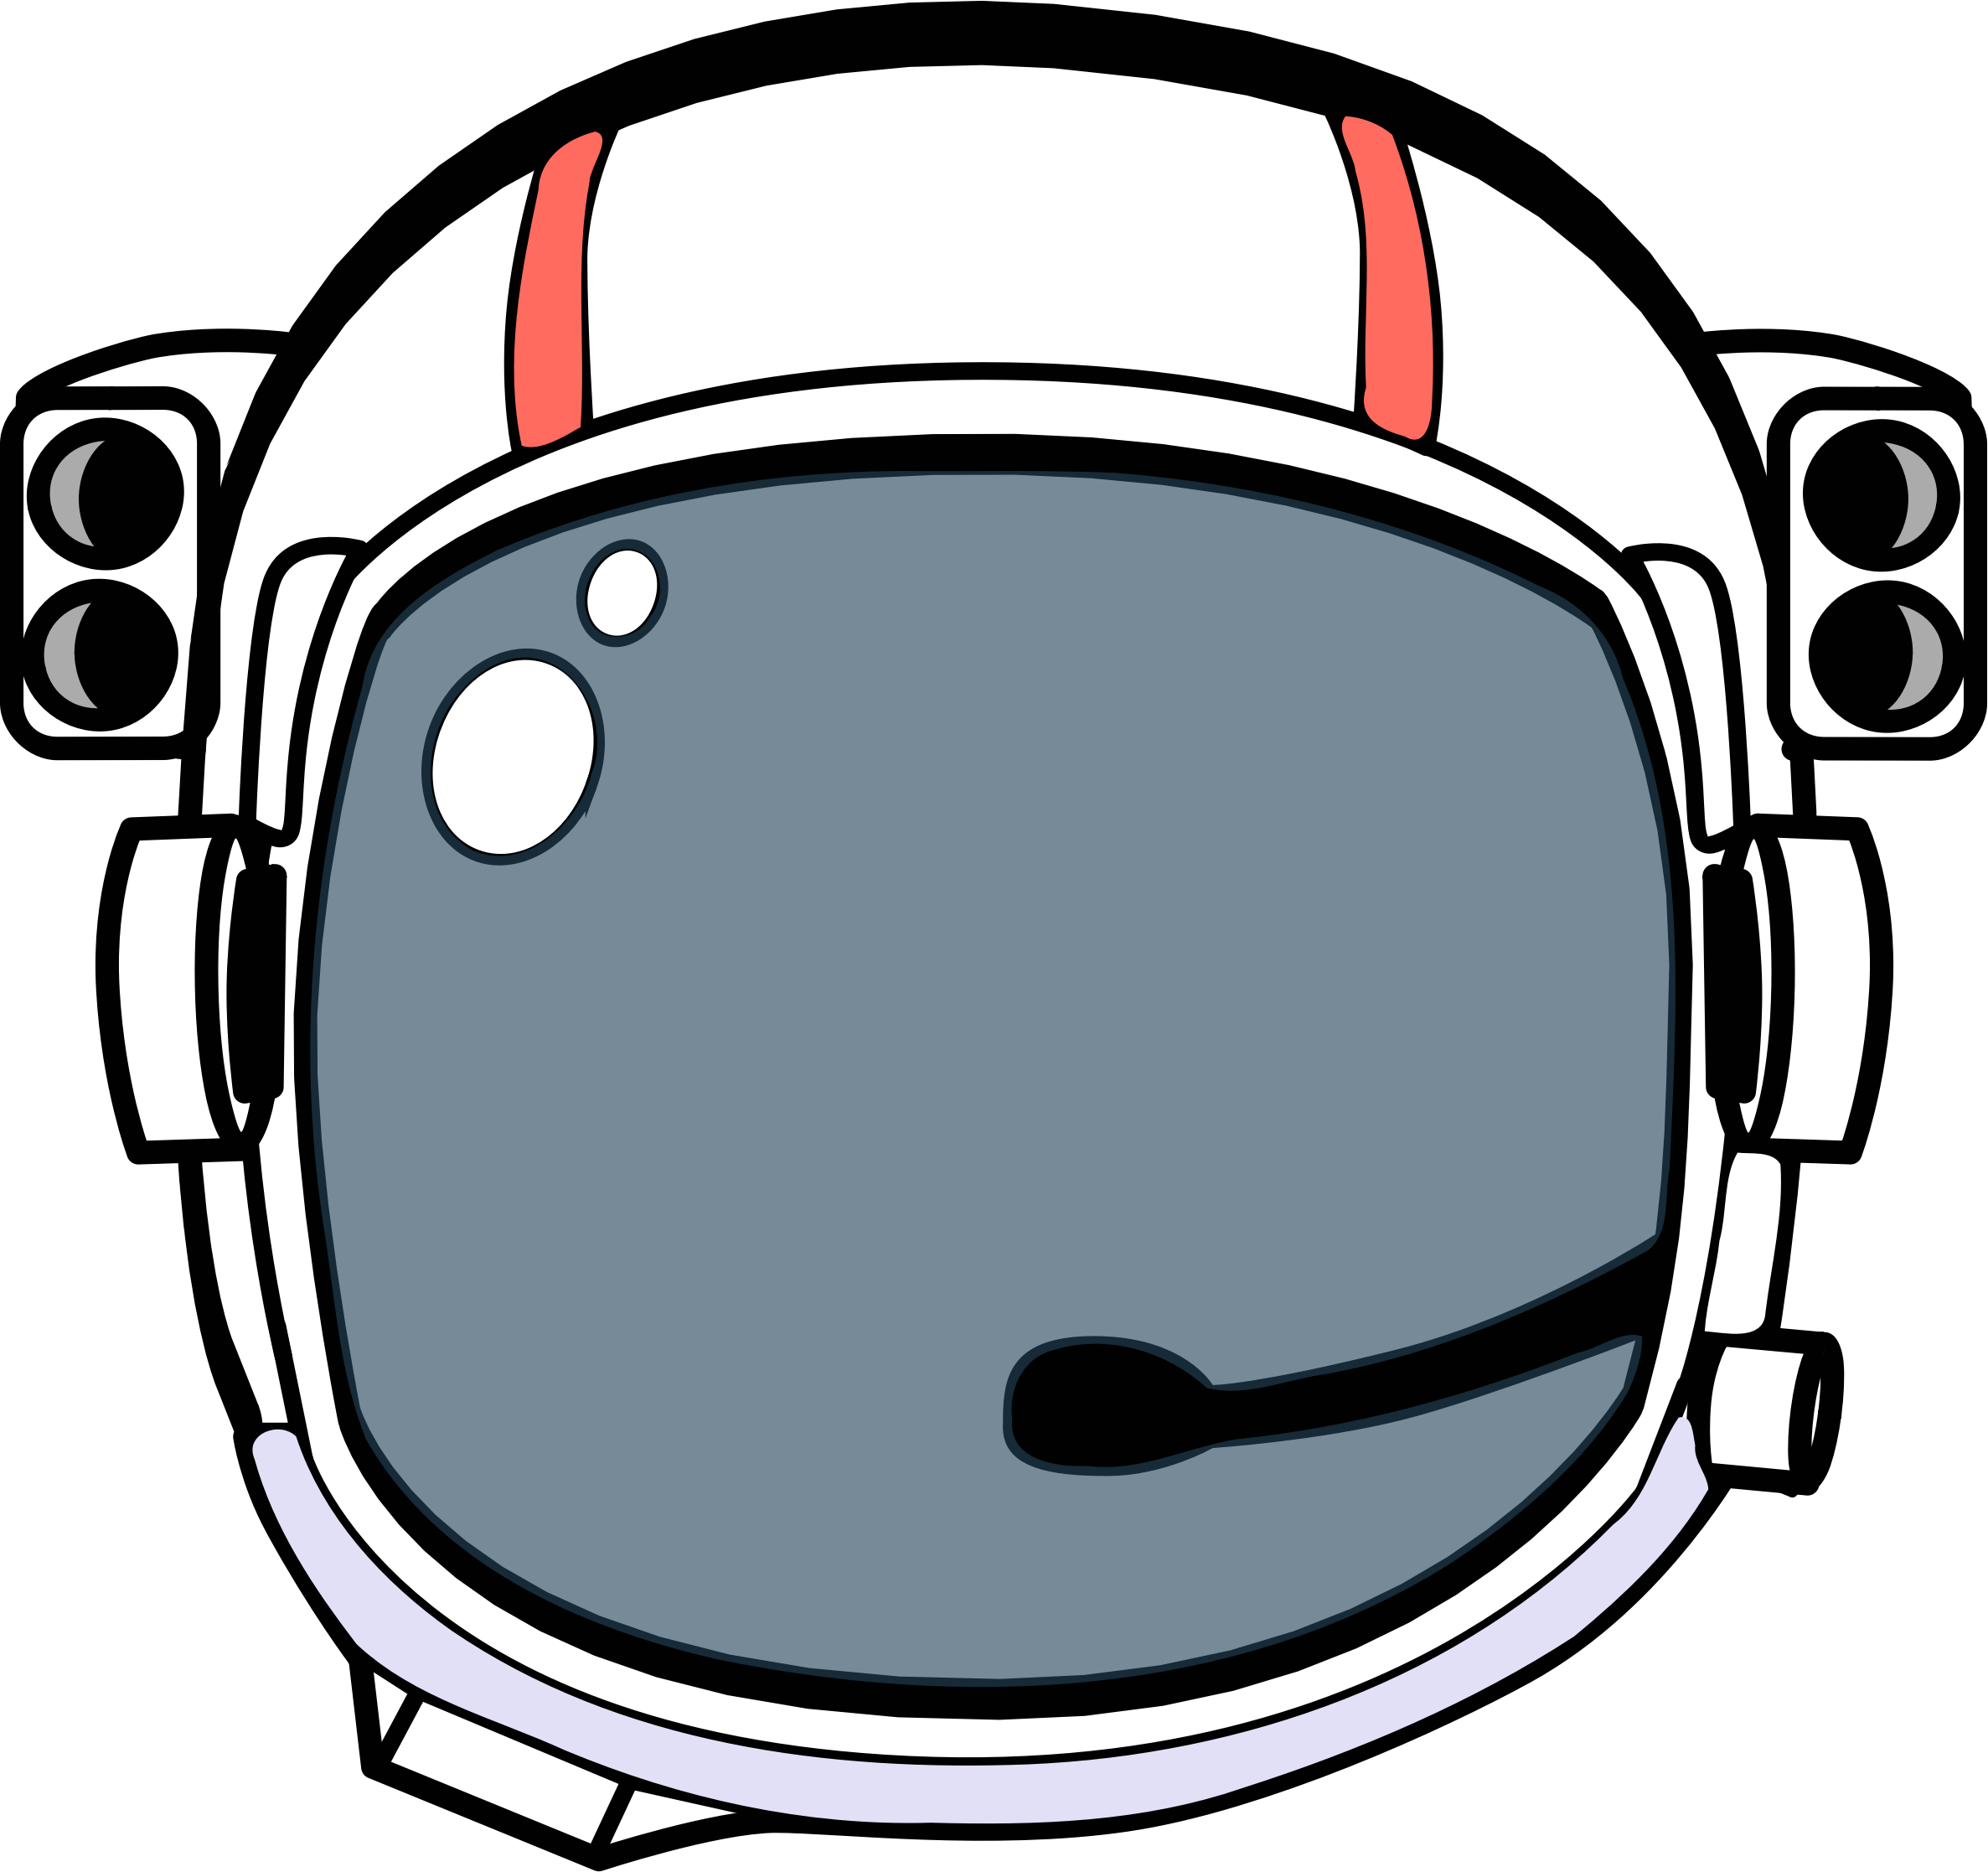 Шлем космонавта картинка